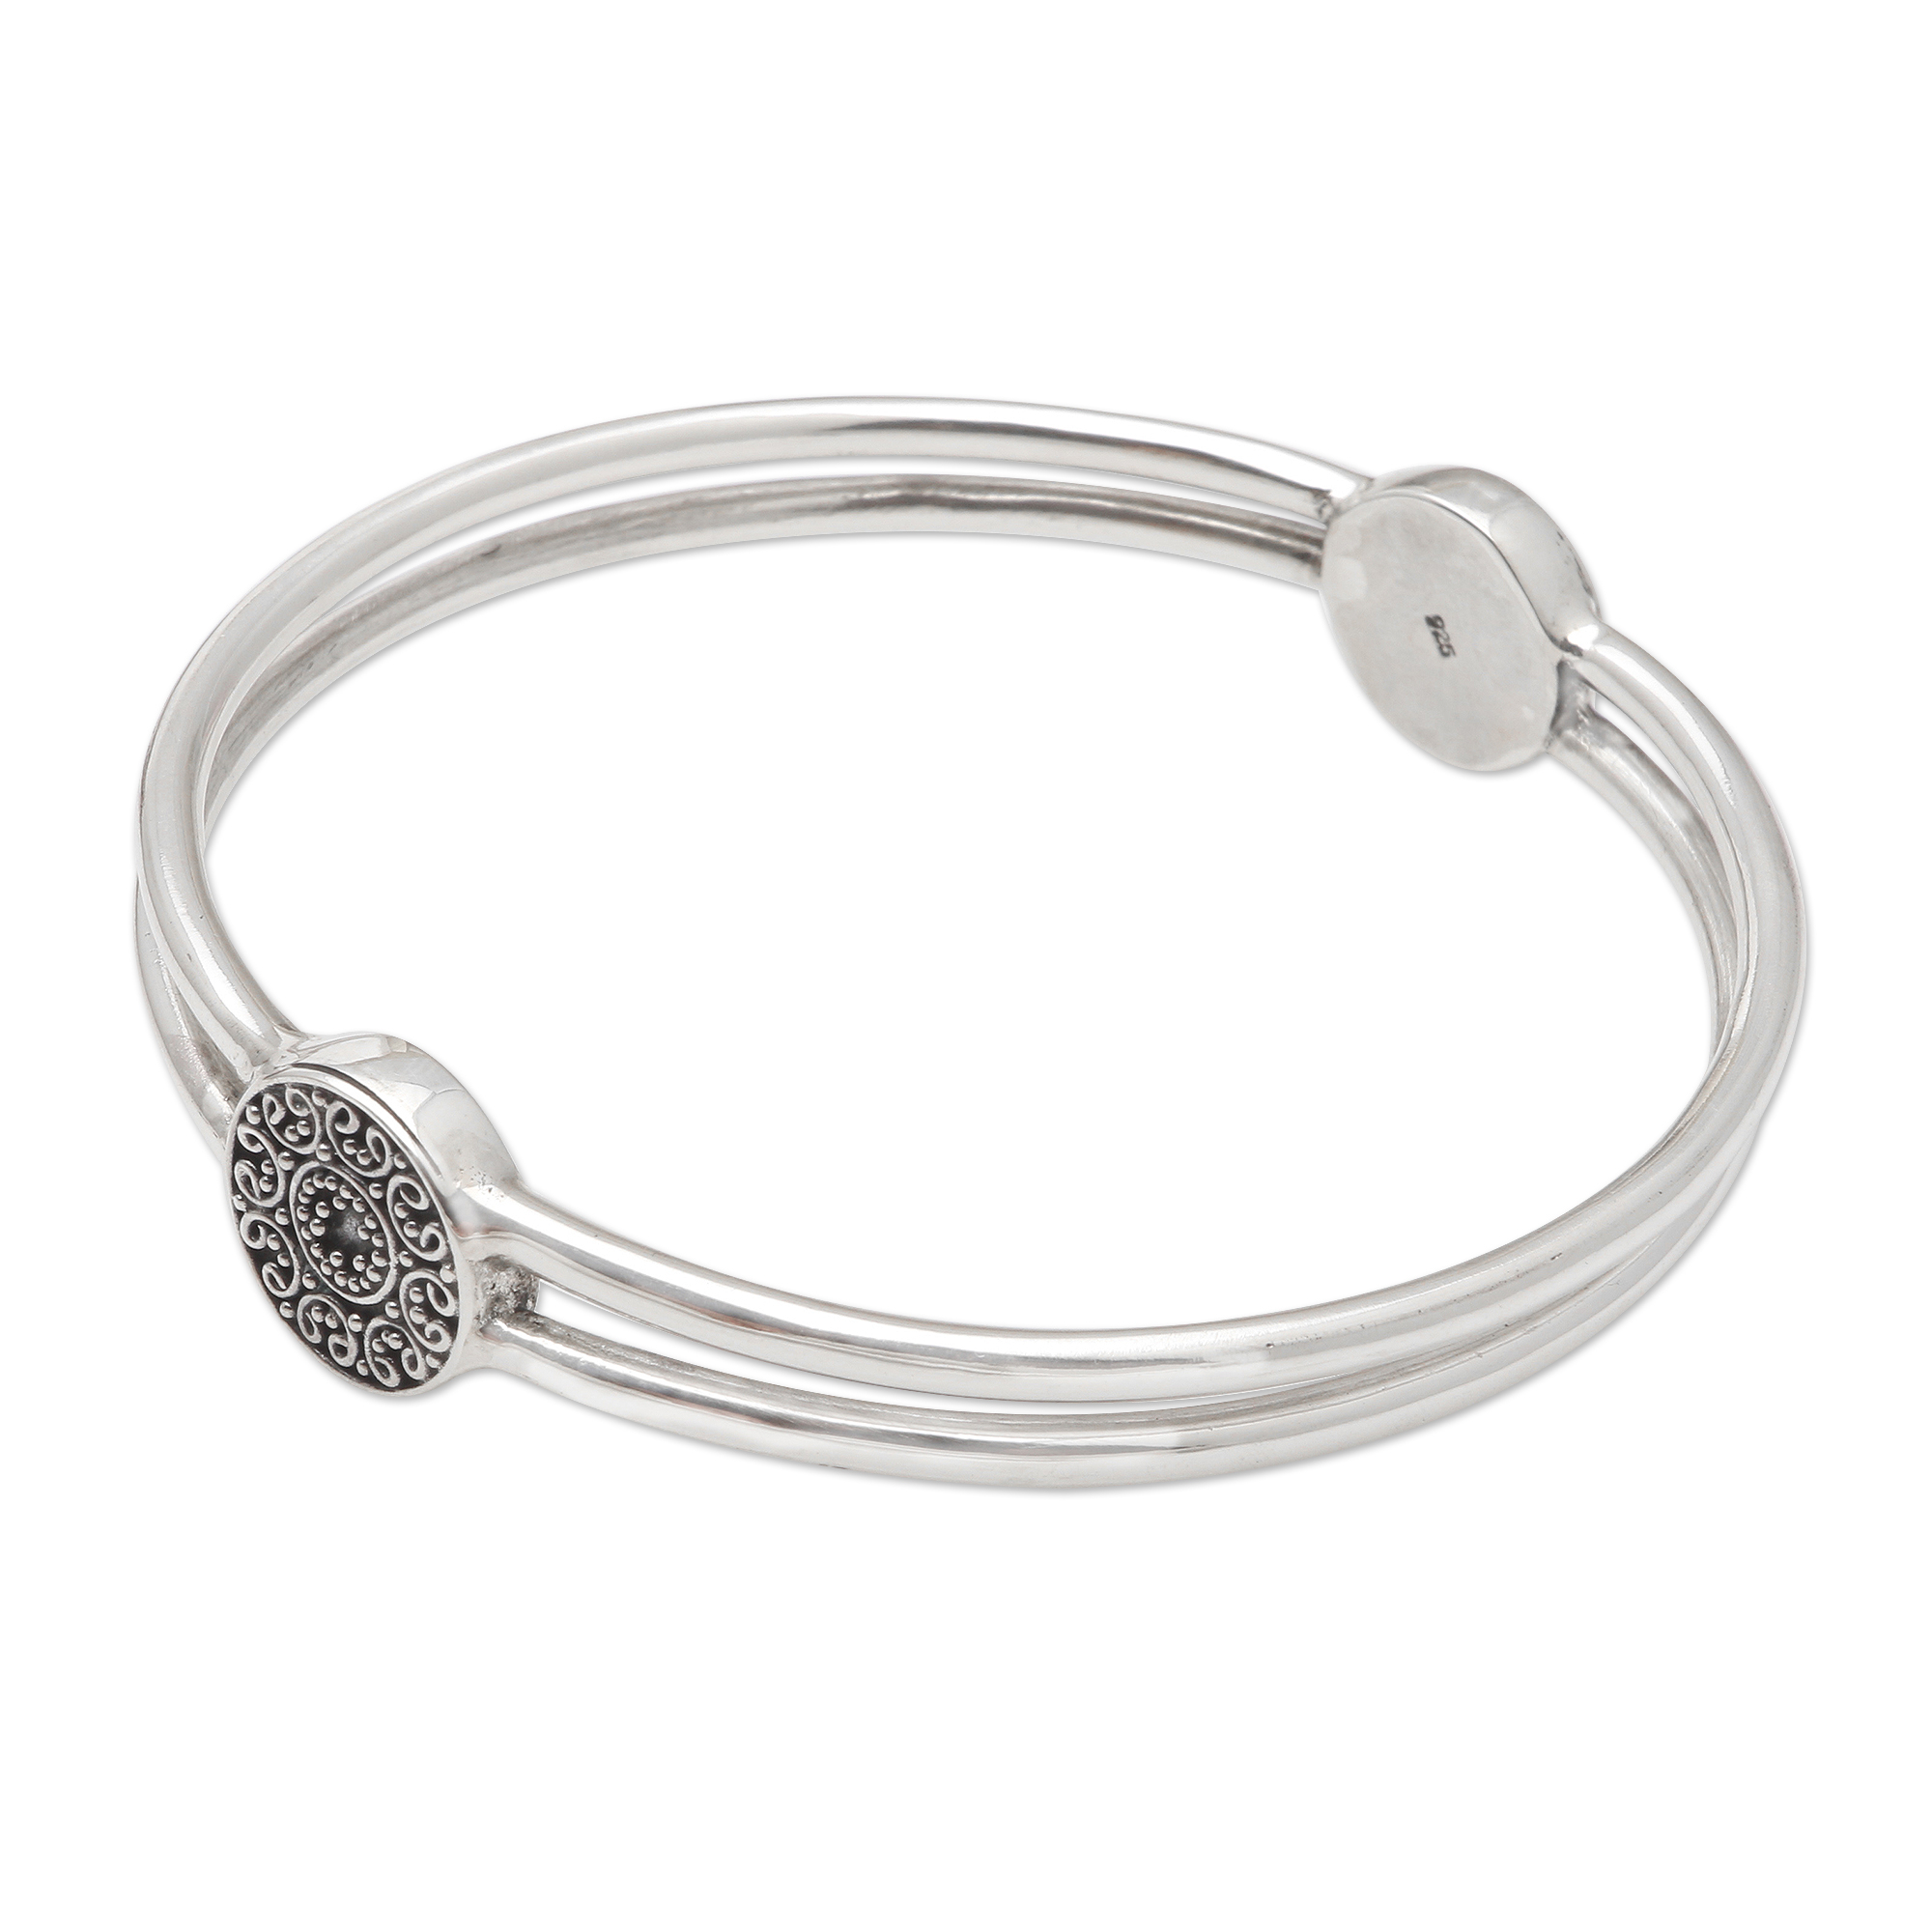 UNICEF Market  Hand Made Sterling Silver Bangle Bracelet (7.25